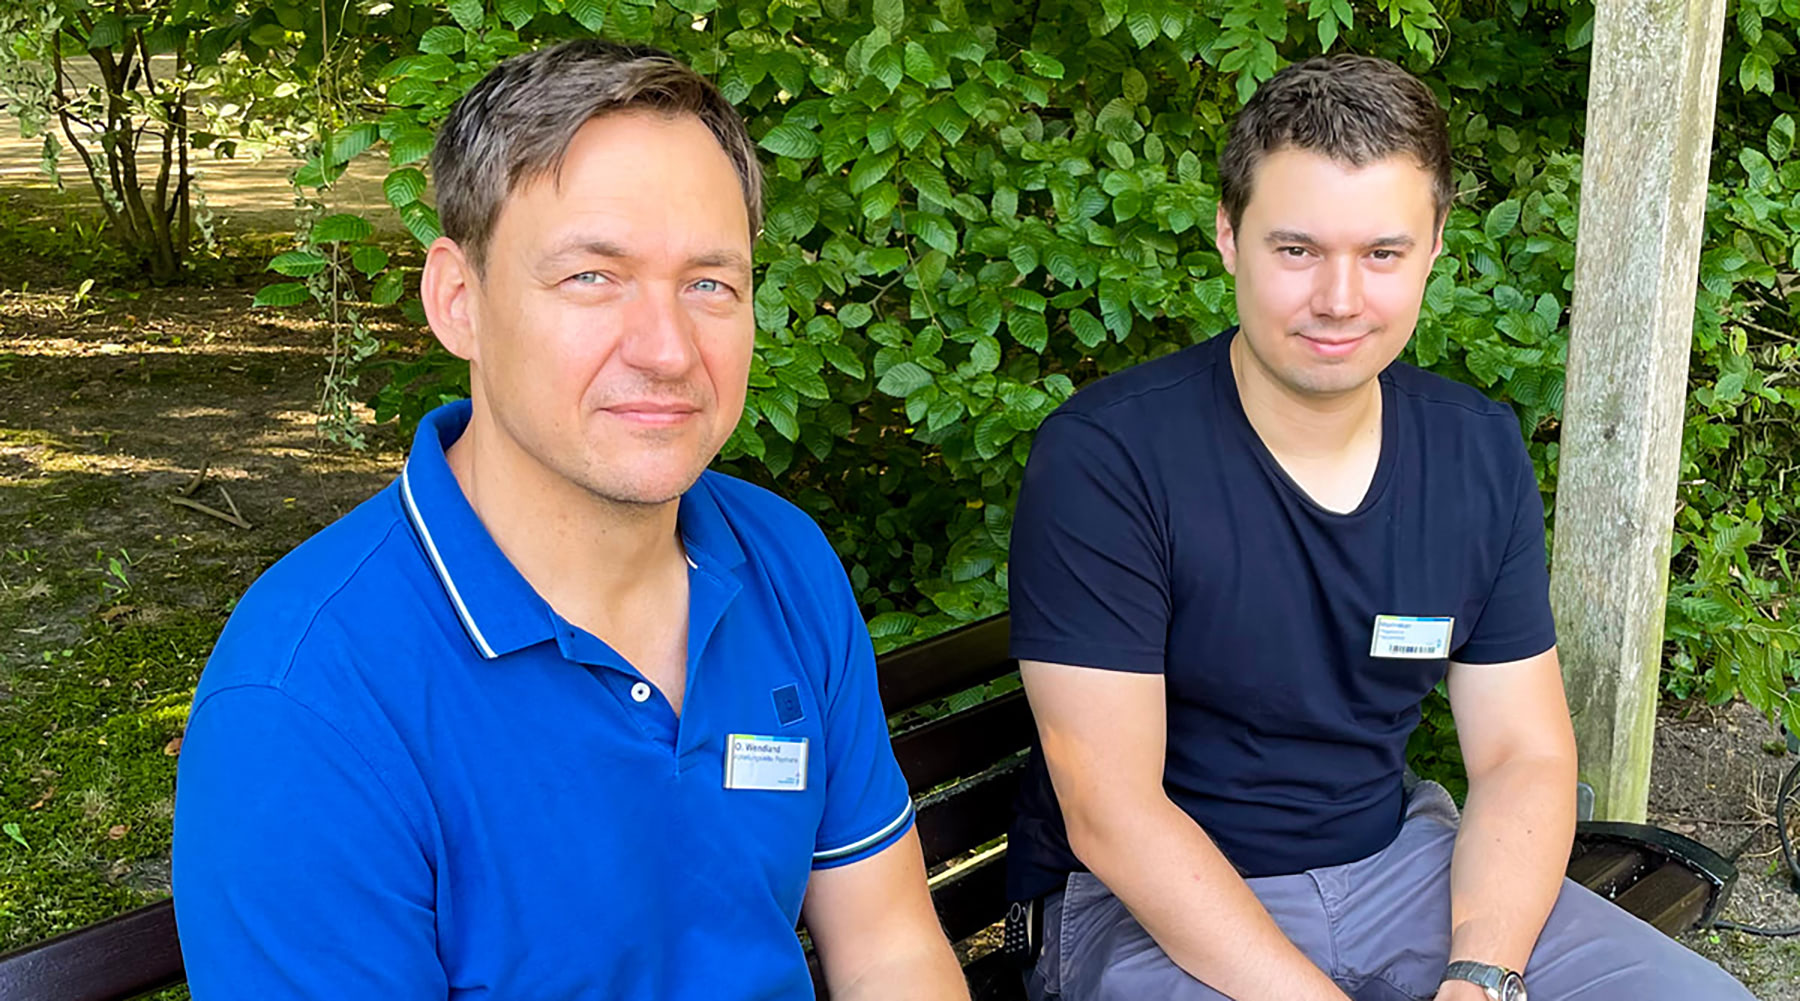 Oliver Faul-Wendland und Maxiliam Steckler sitzen nebeneinander auf einer Bank im Grünen und lächeln in die Kamera